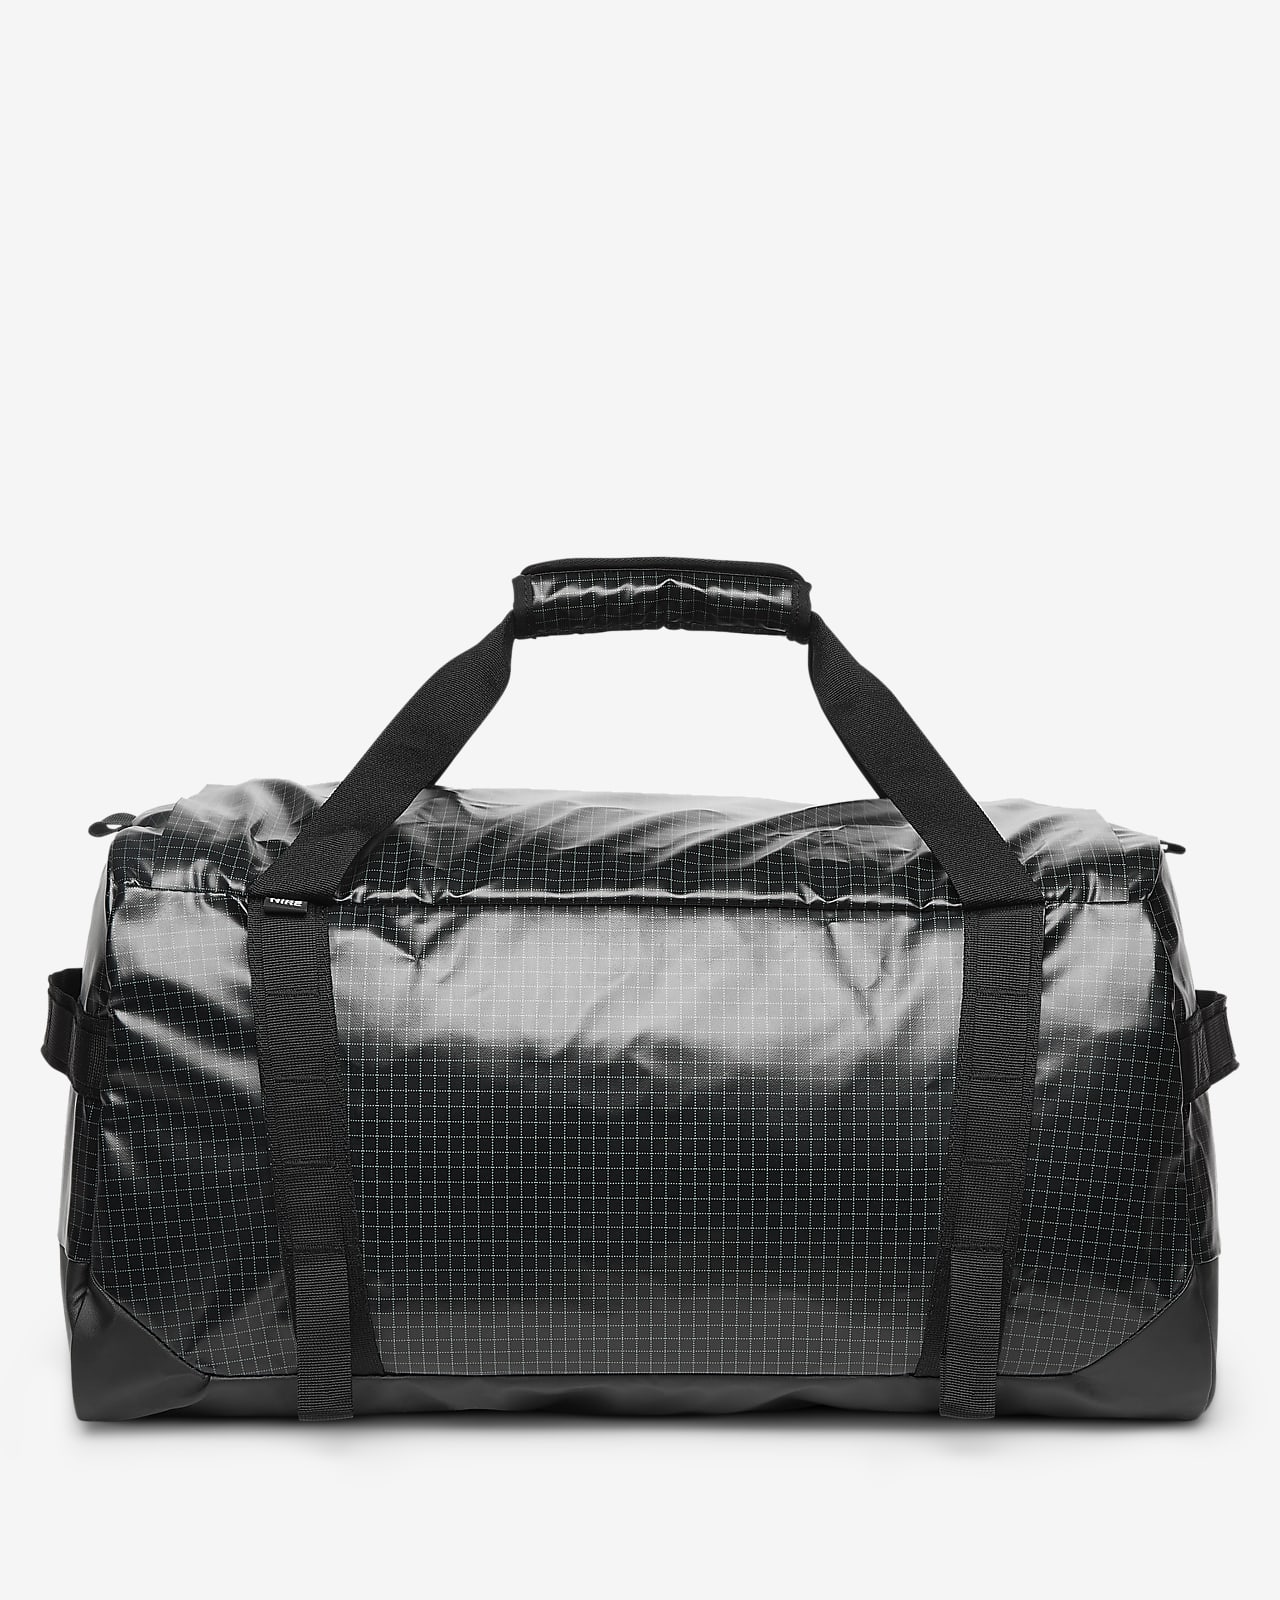 Nike Hike Duffel Bag (50L)